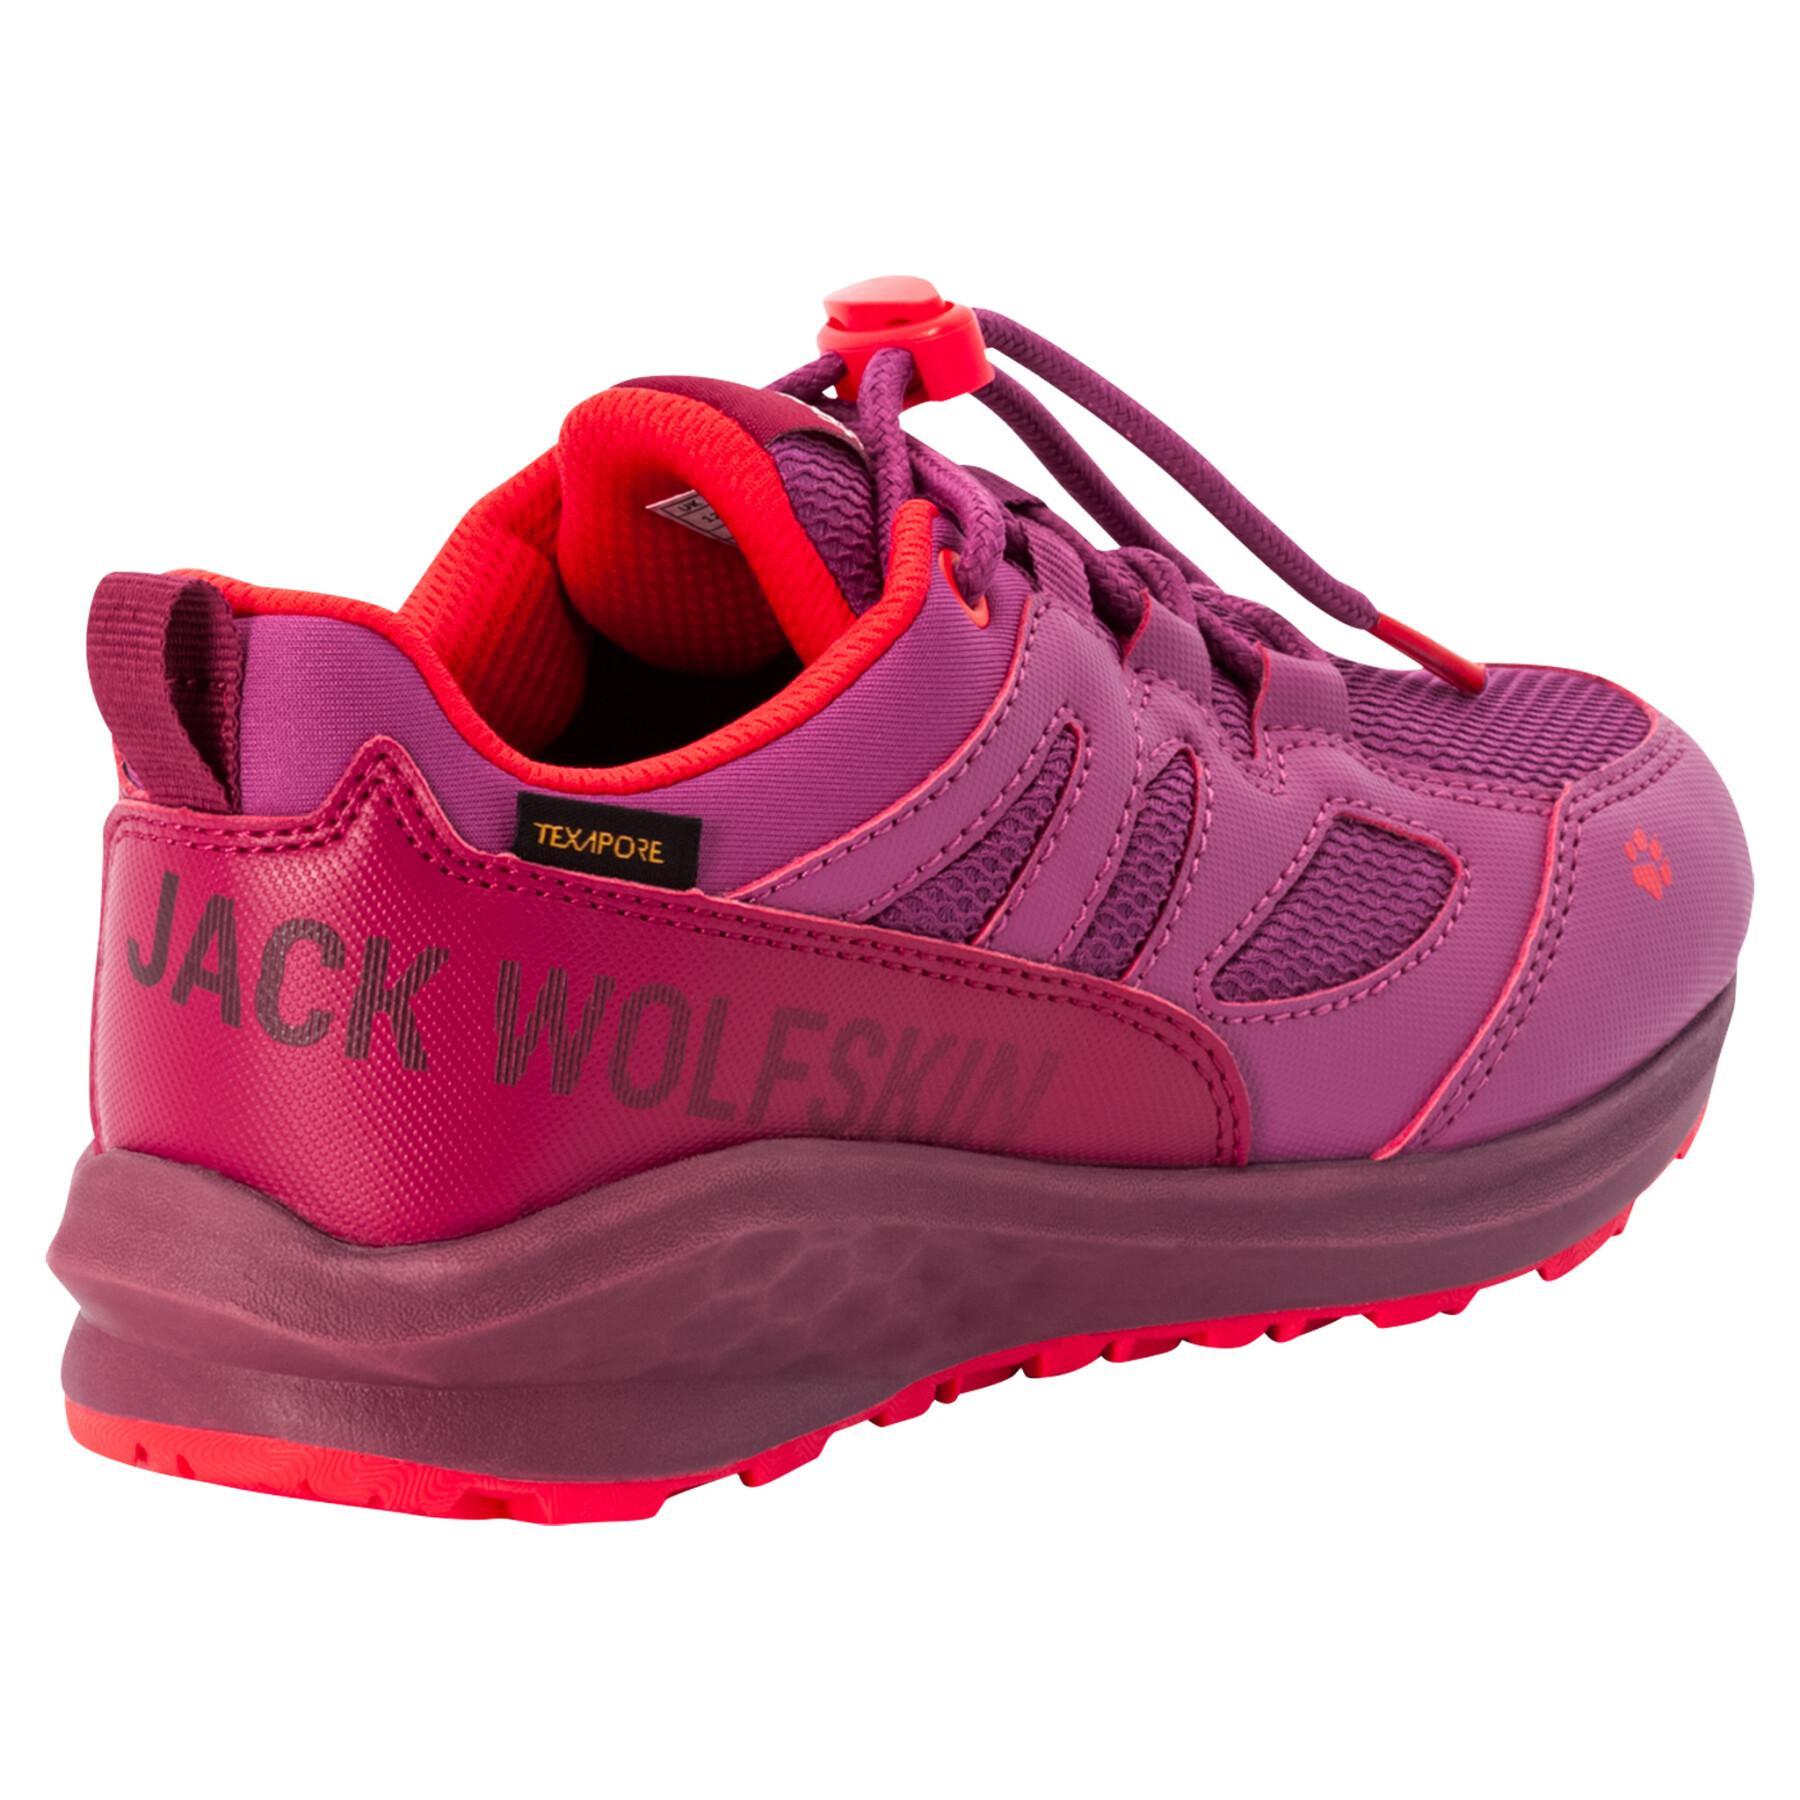 Buty turystyczne dla dzieci Jack Wolfskin Unleash 4 Speed Texapore